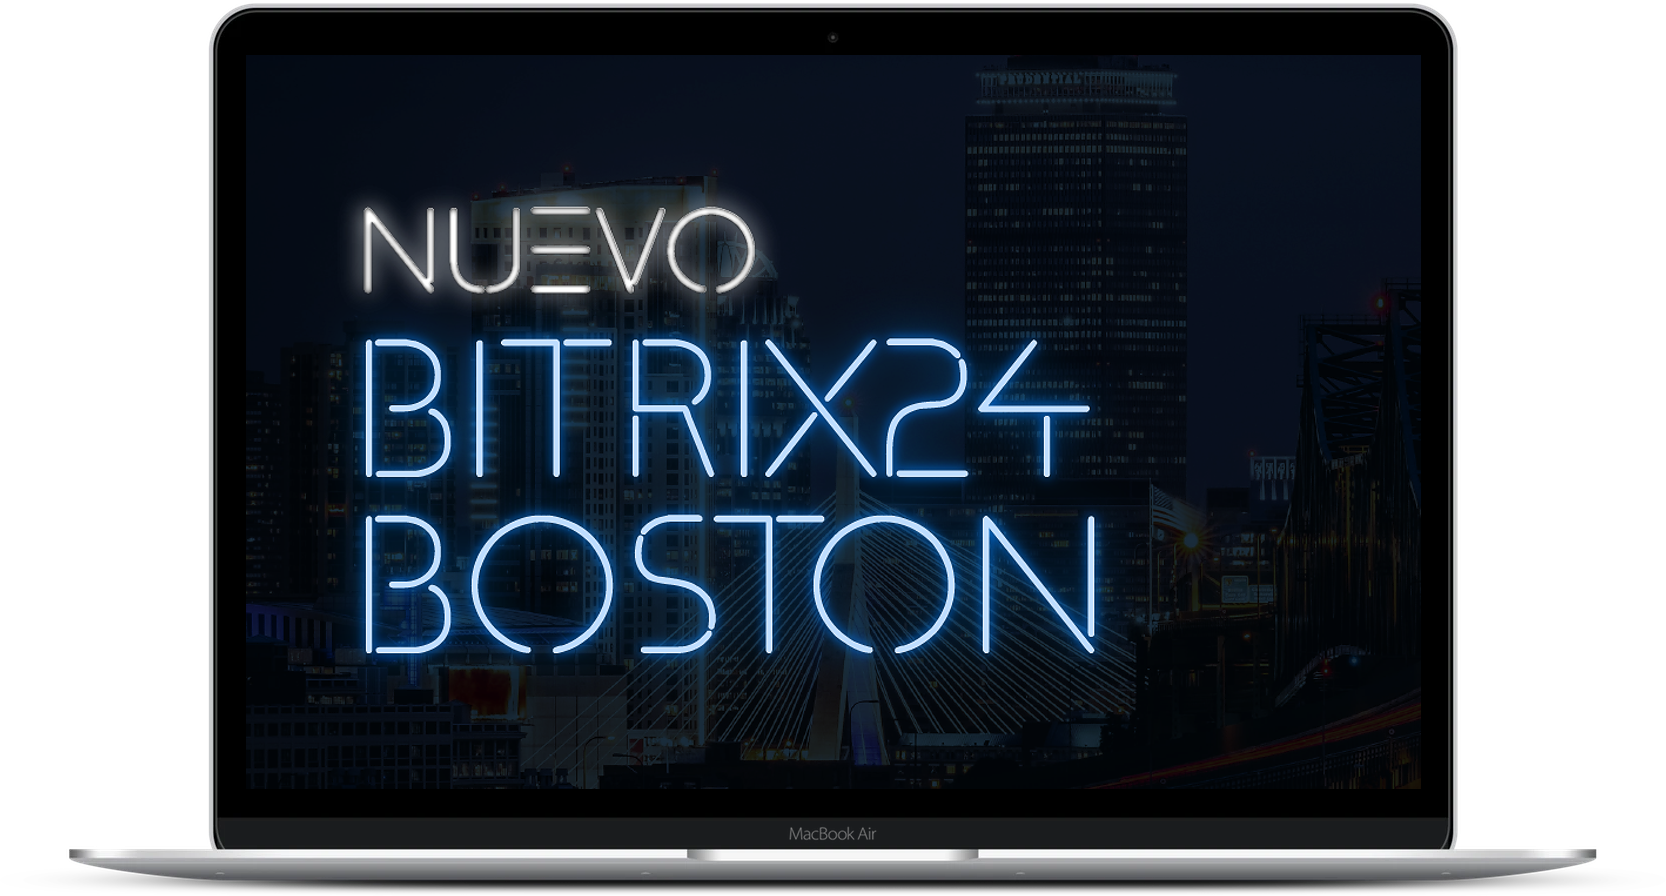 Nuevo Bitrix24 Boston, Presentación 2019